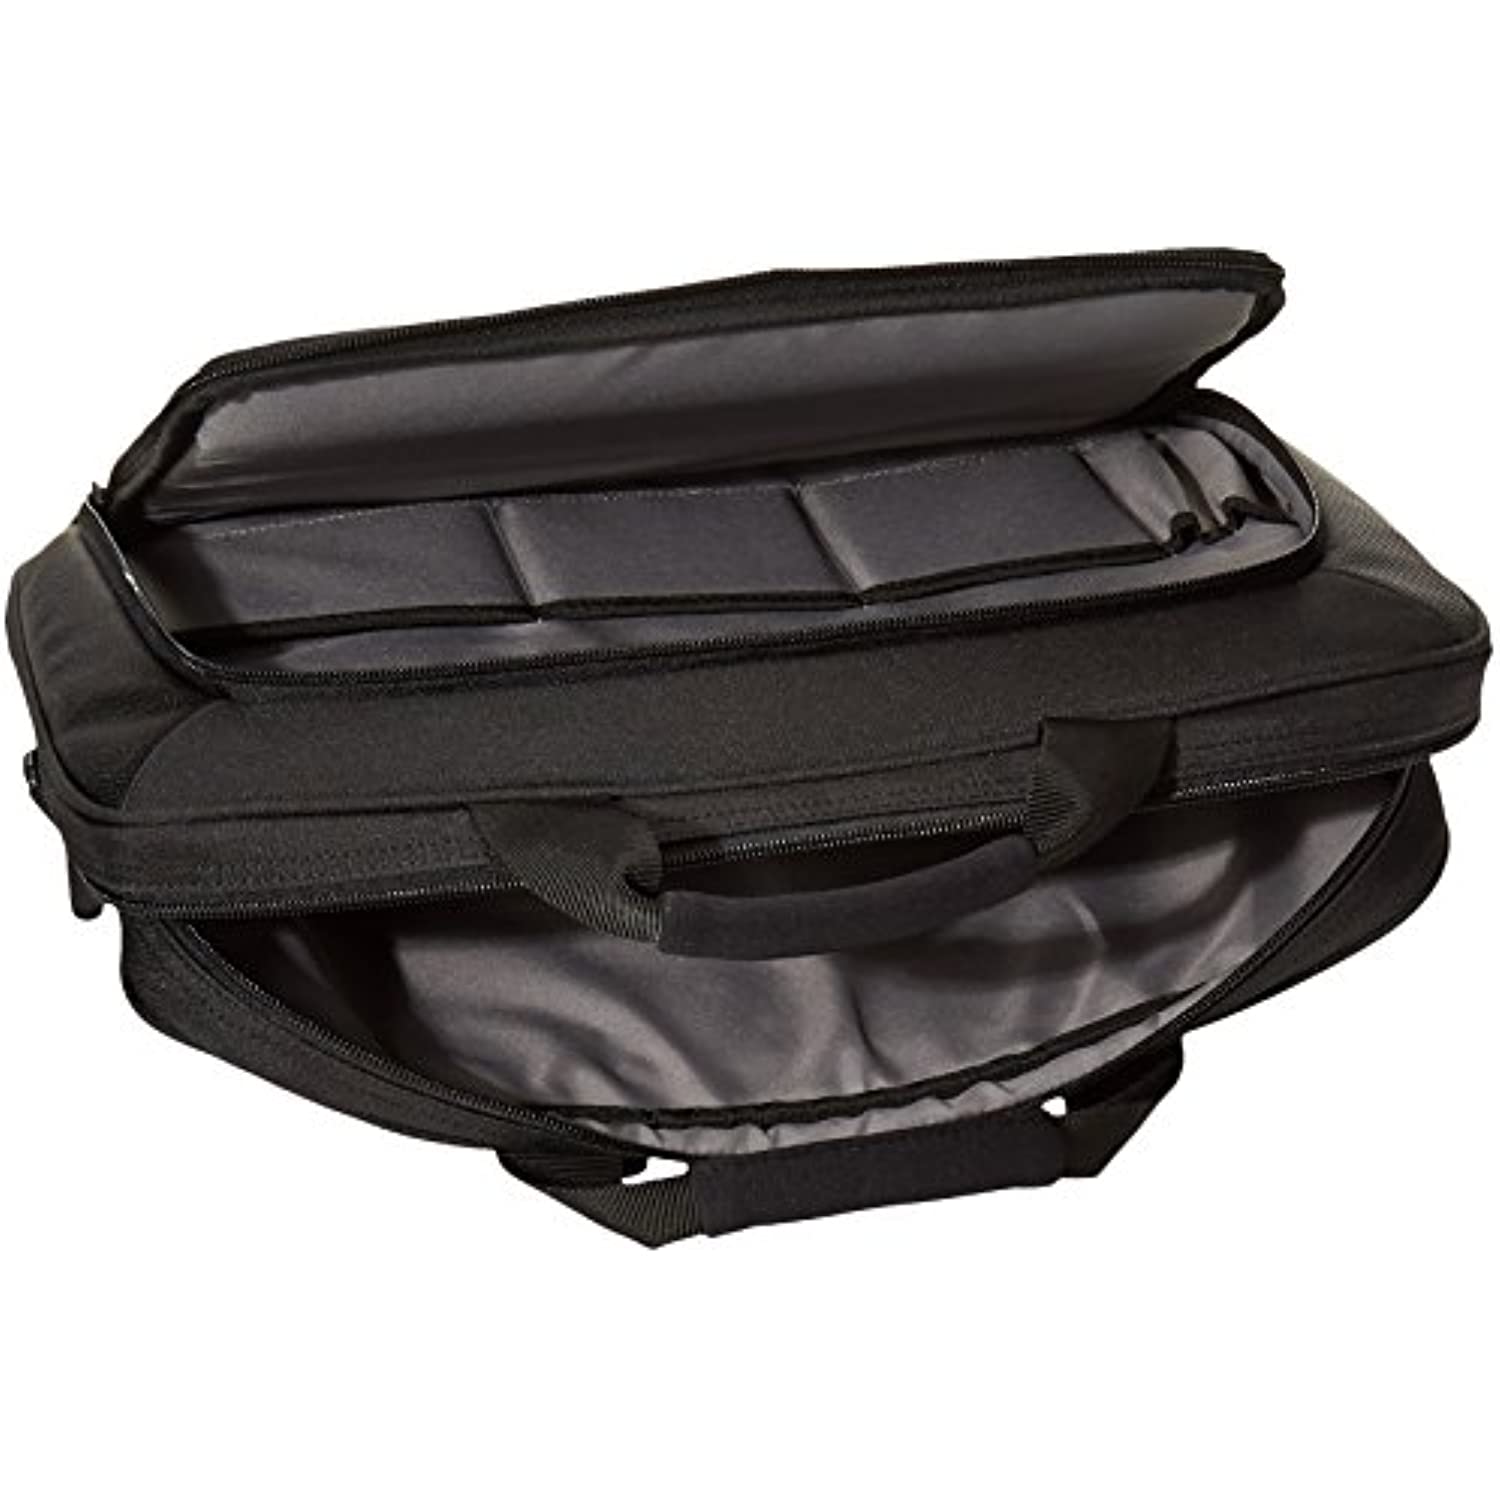 15.6 Inch Laptop and Tablet Case Shoulder Bag, Black